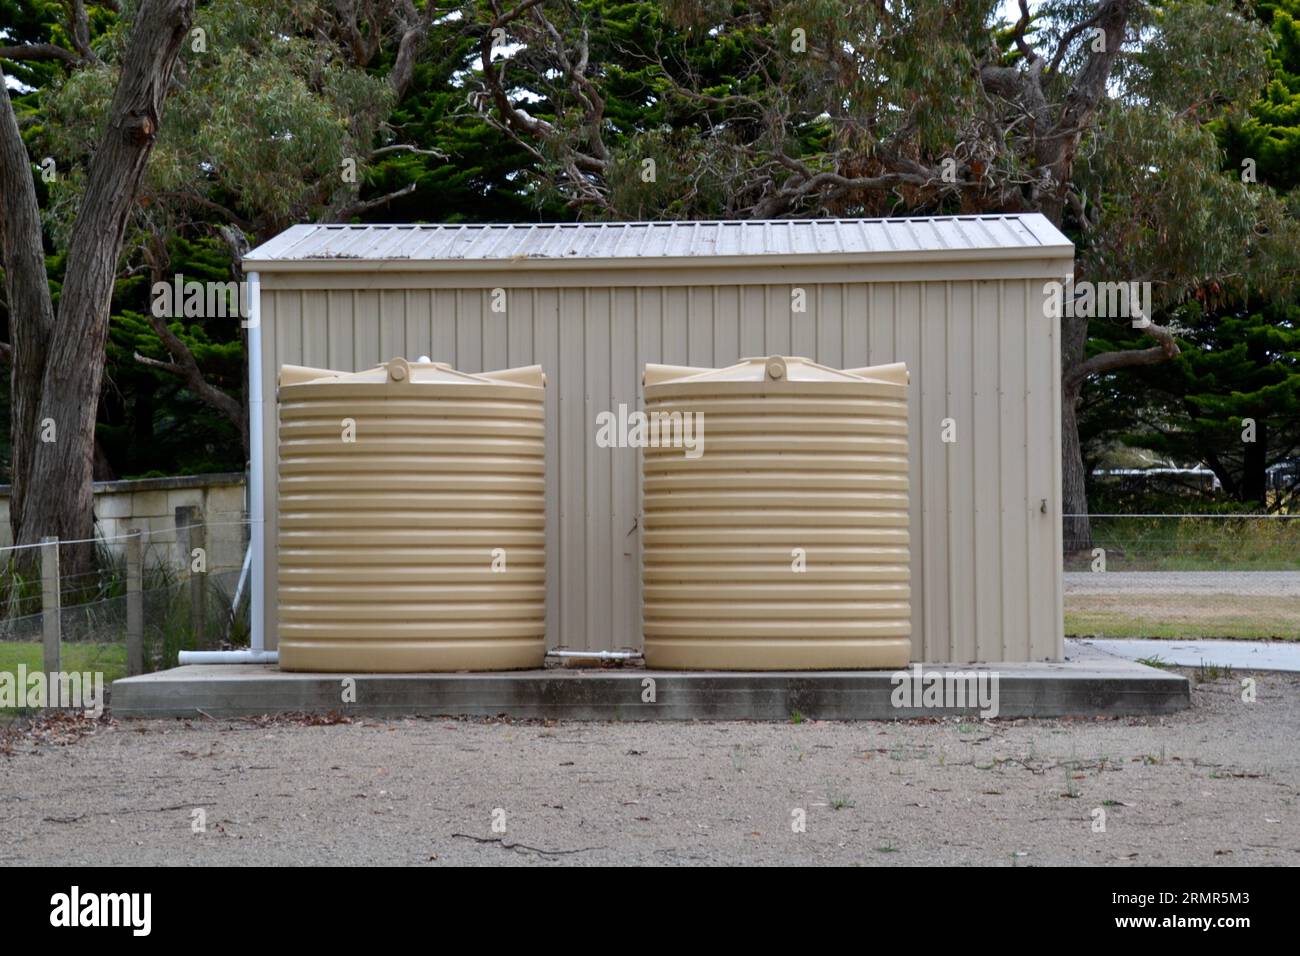 Deux réservoirs d'eau en plastique sur une base en béton à l'extérieur sont la caractéristique de durabilité d'un petit hangar agricole sur une propriété australienne avec un fond de gommier Banque D'Images